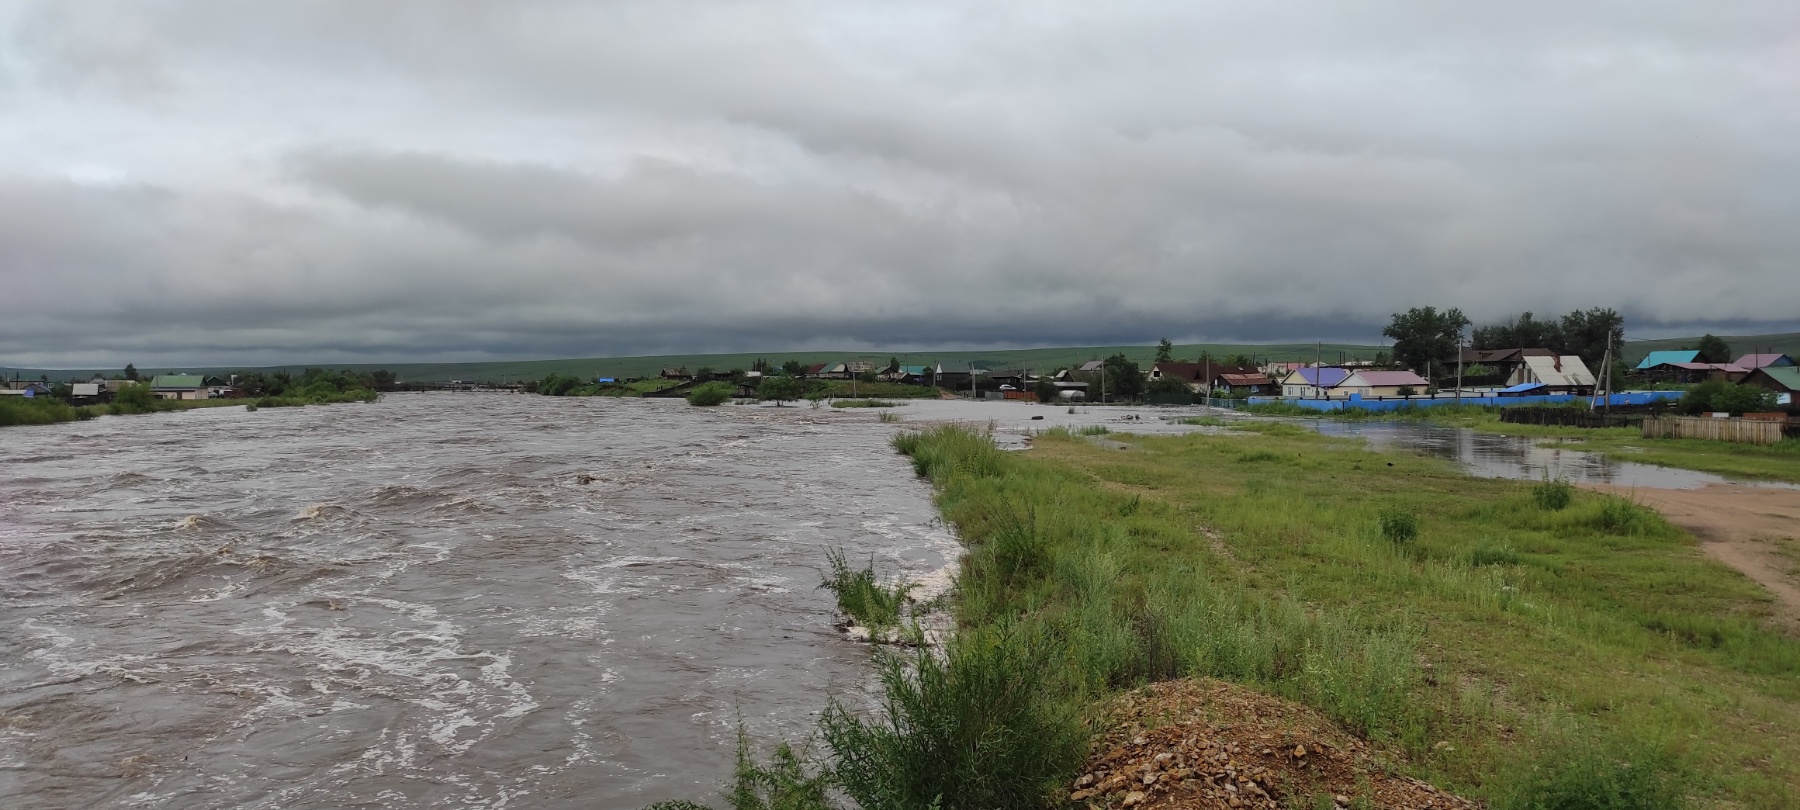 Река Алеурка разбушевалась в Чернышевске (видео)